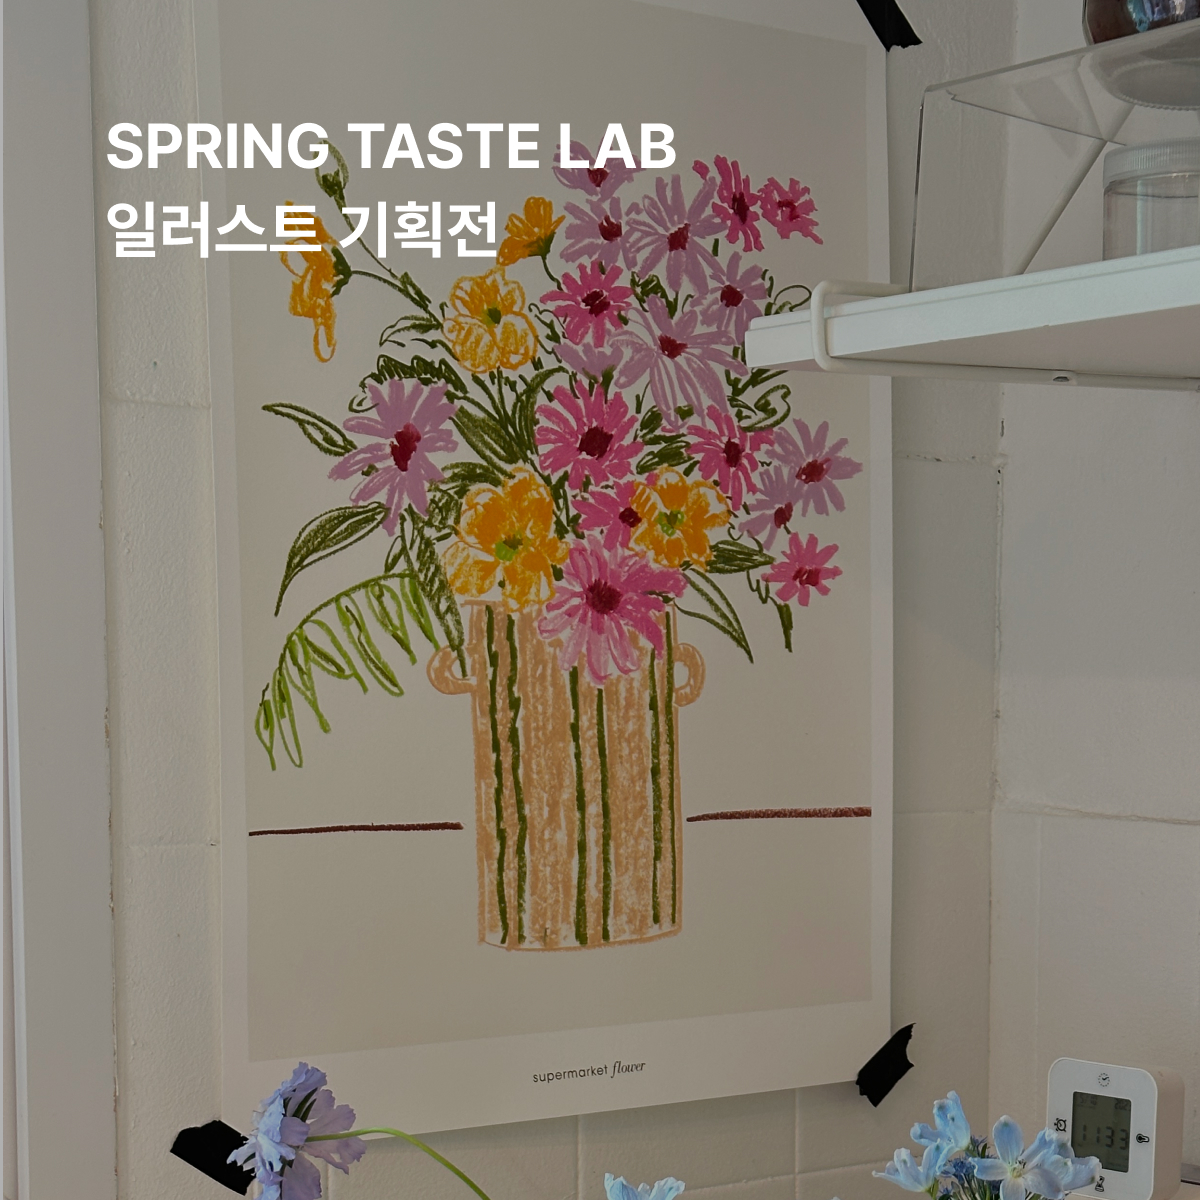 [EXHIBITION] Spring Taste Lab